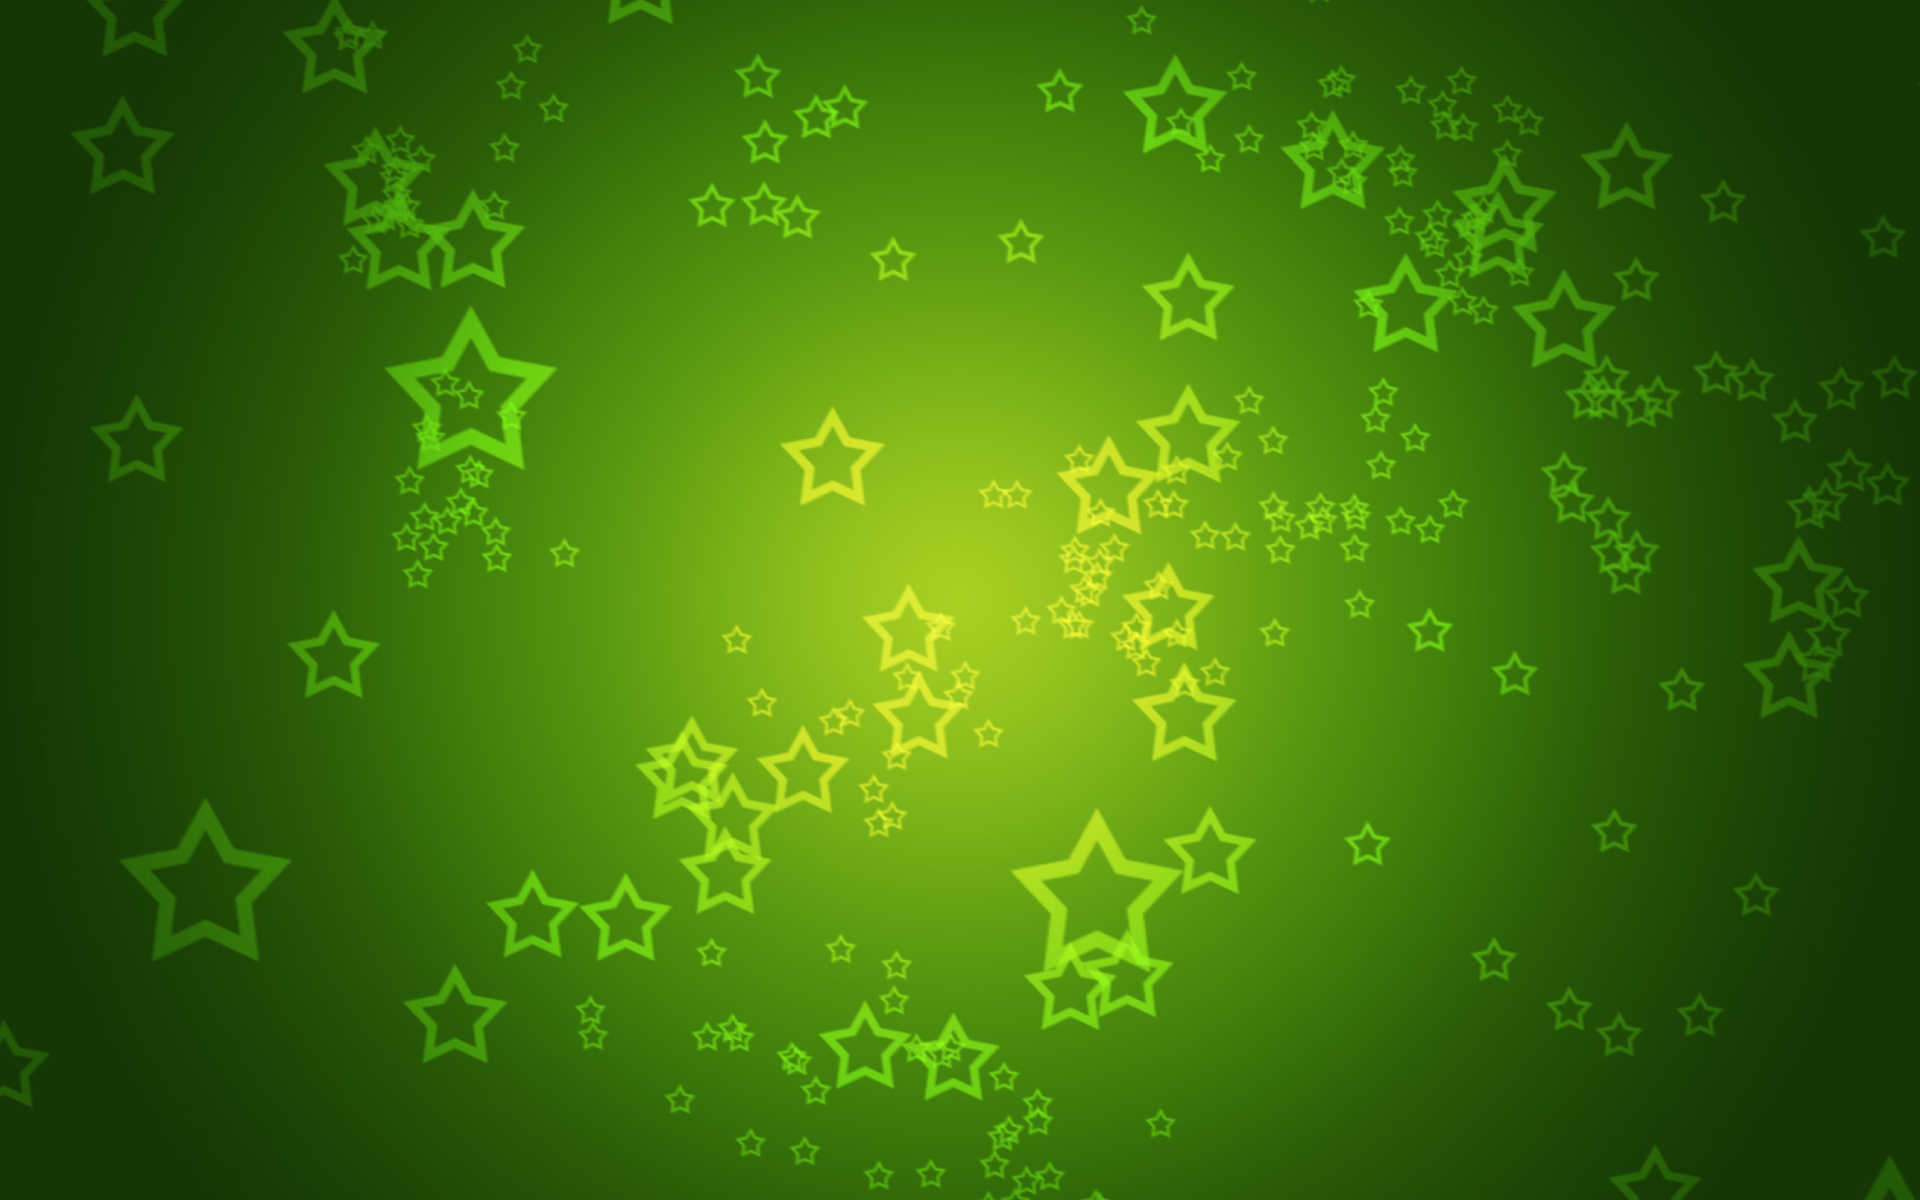 Das Green Stars Wallpaper 1920x1200